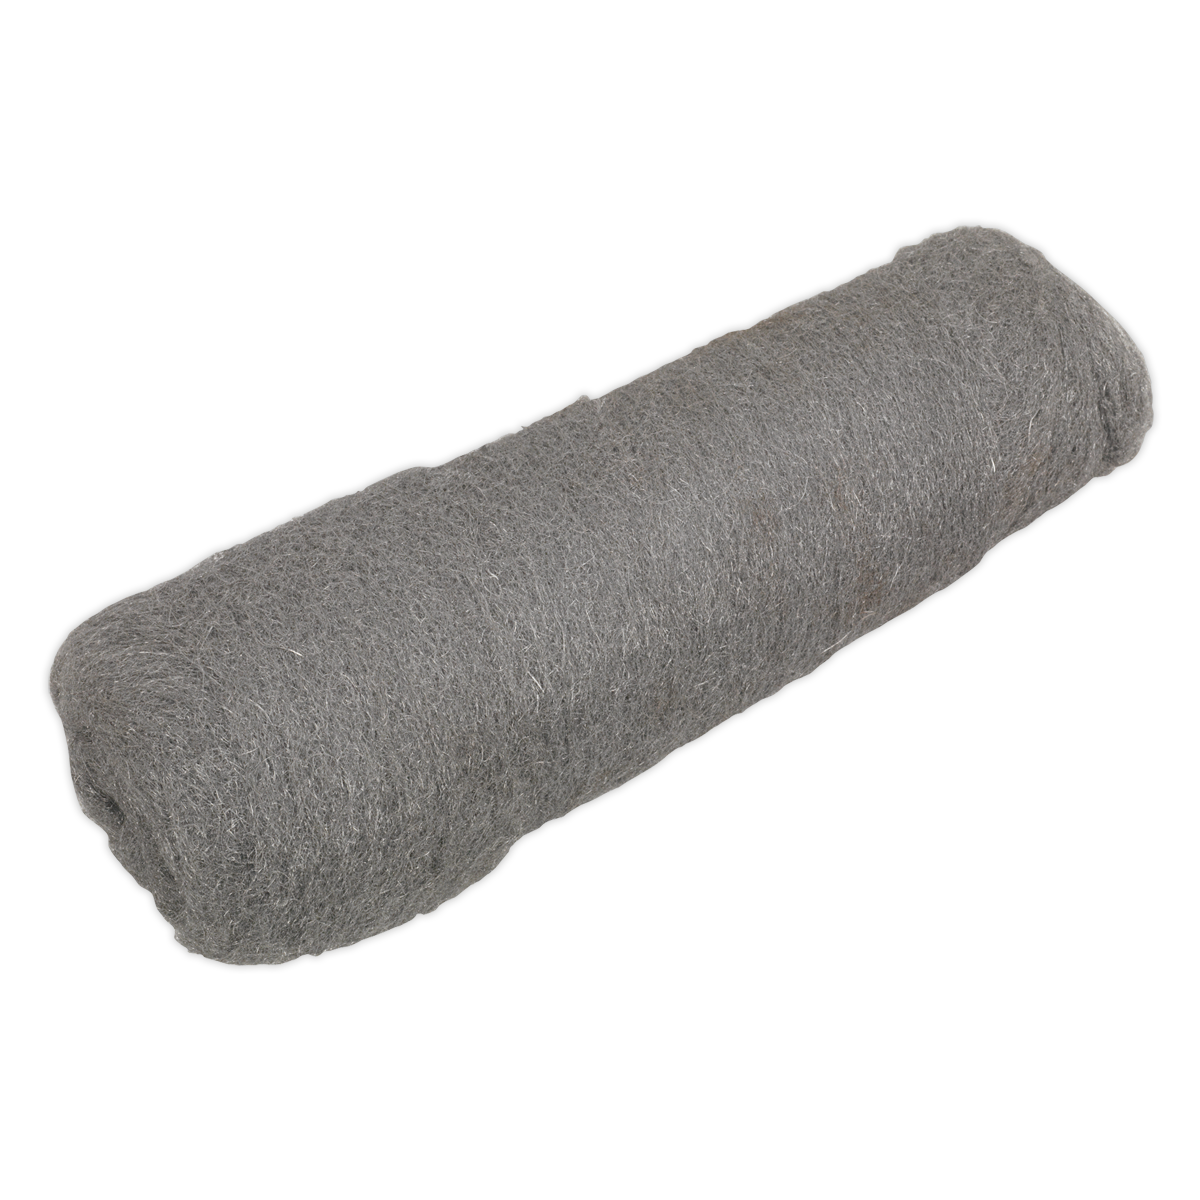 Sealey Steel Wool #0 Fine Grade 450g